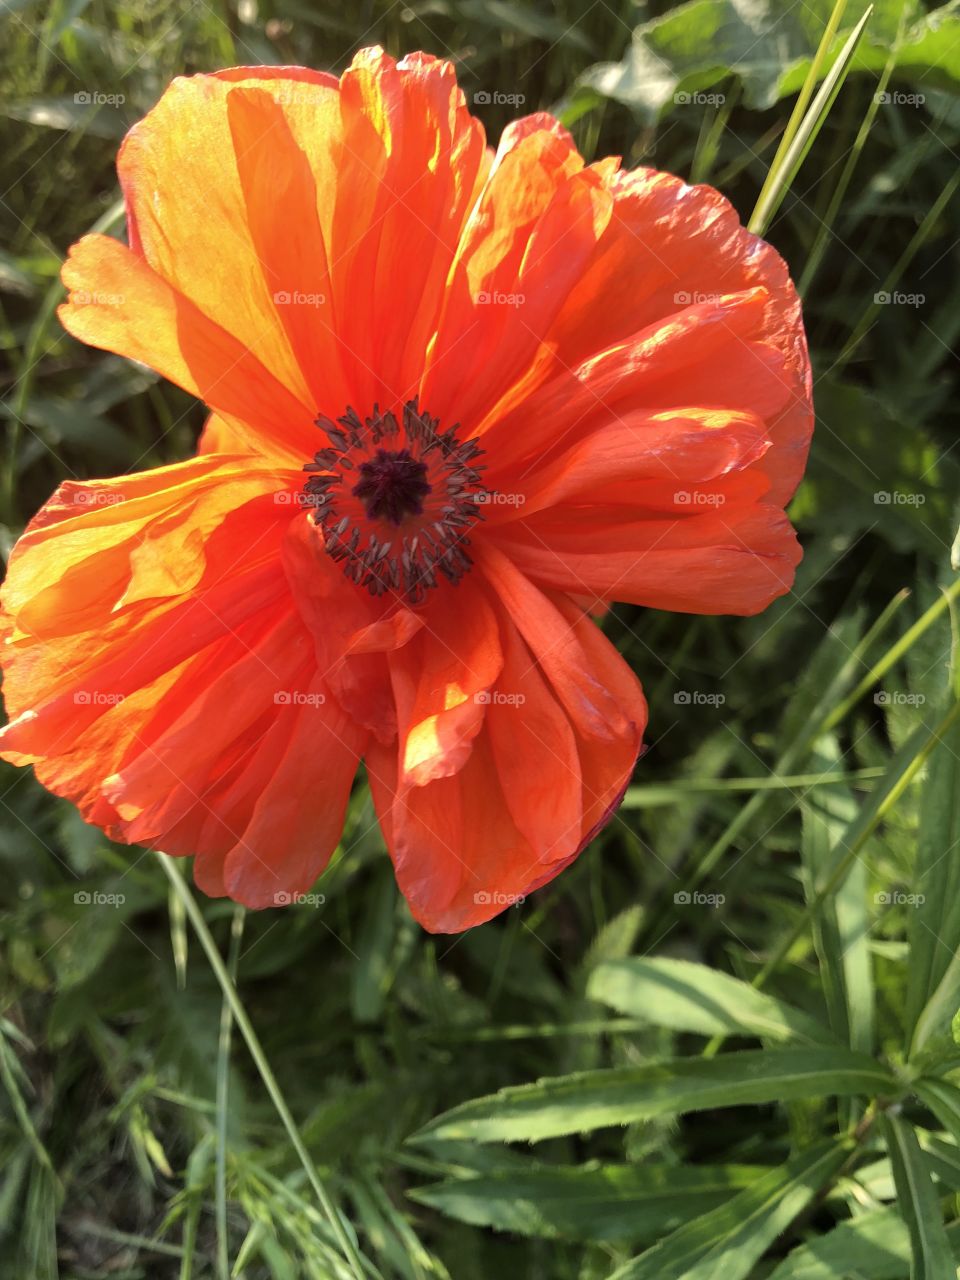 Poppy in sunlight